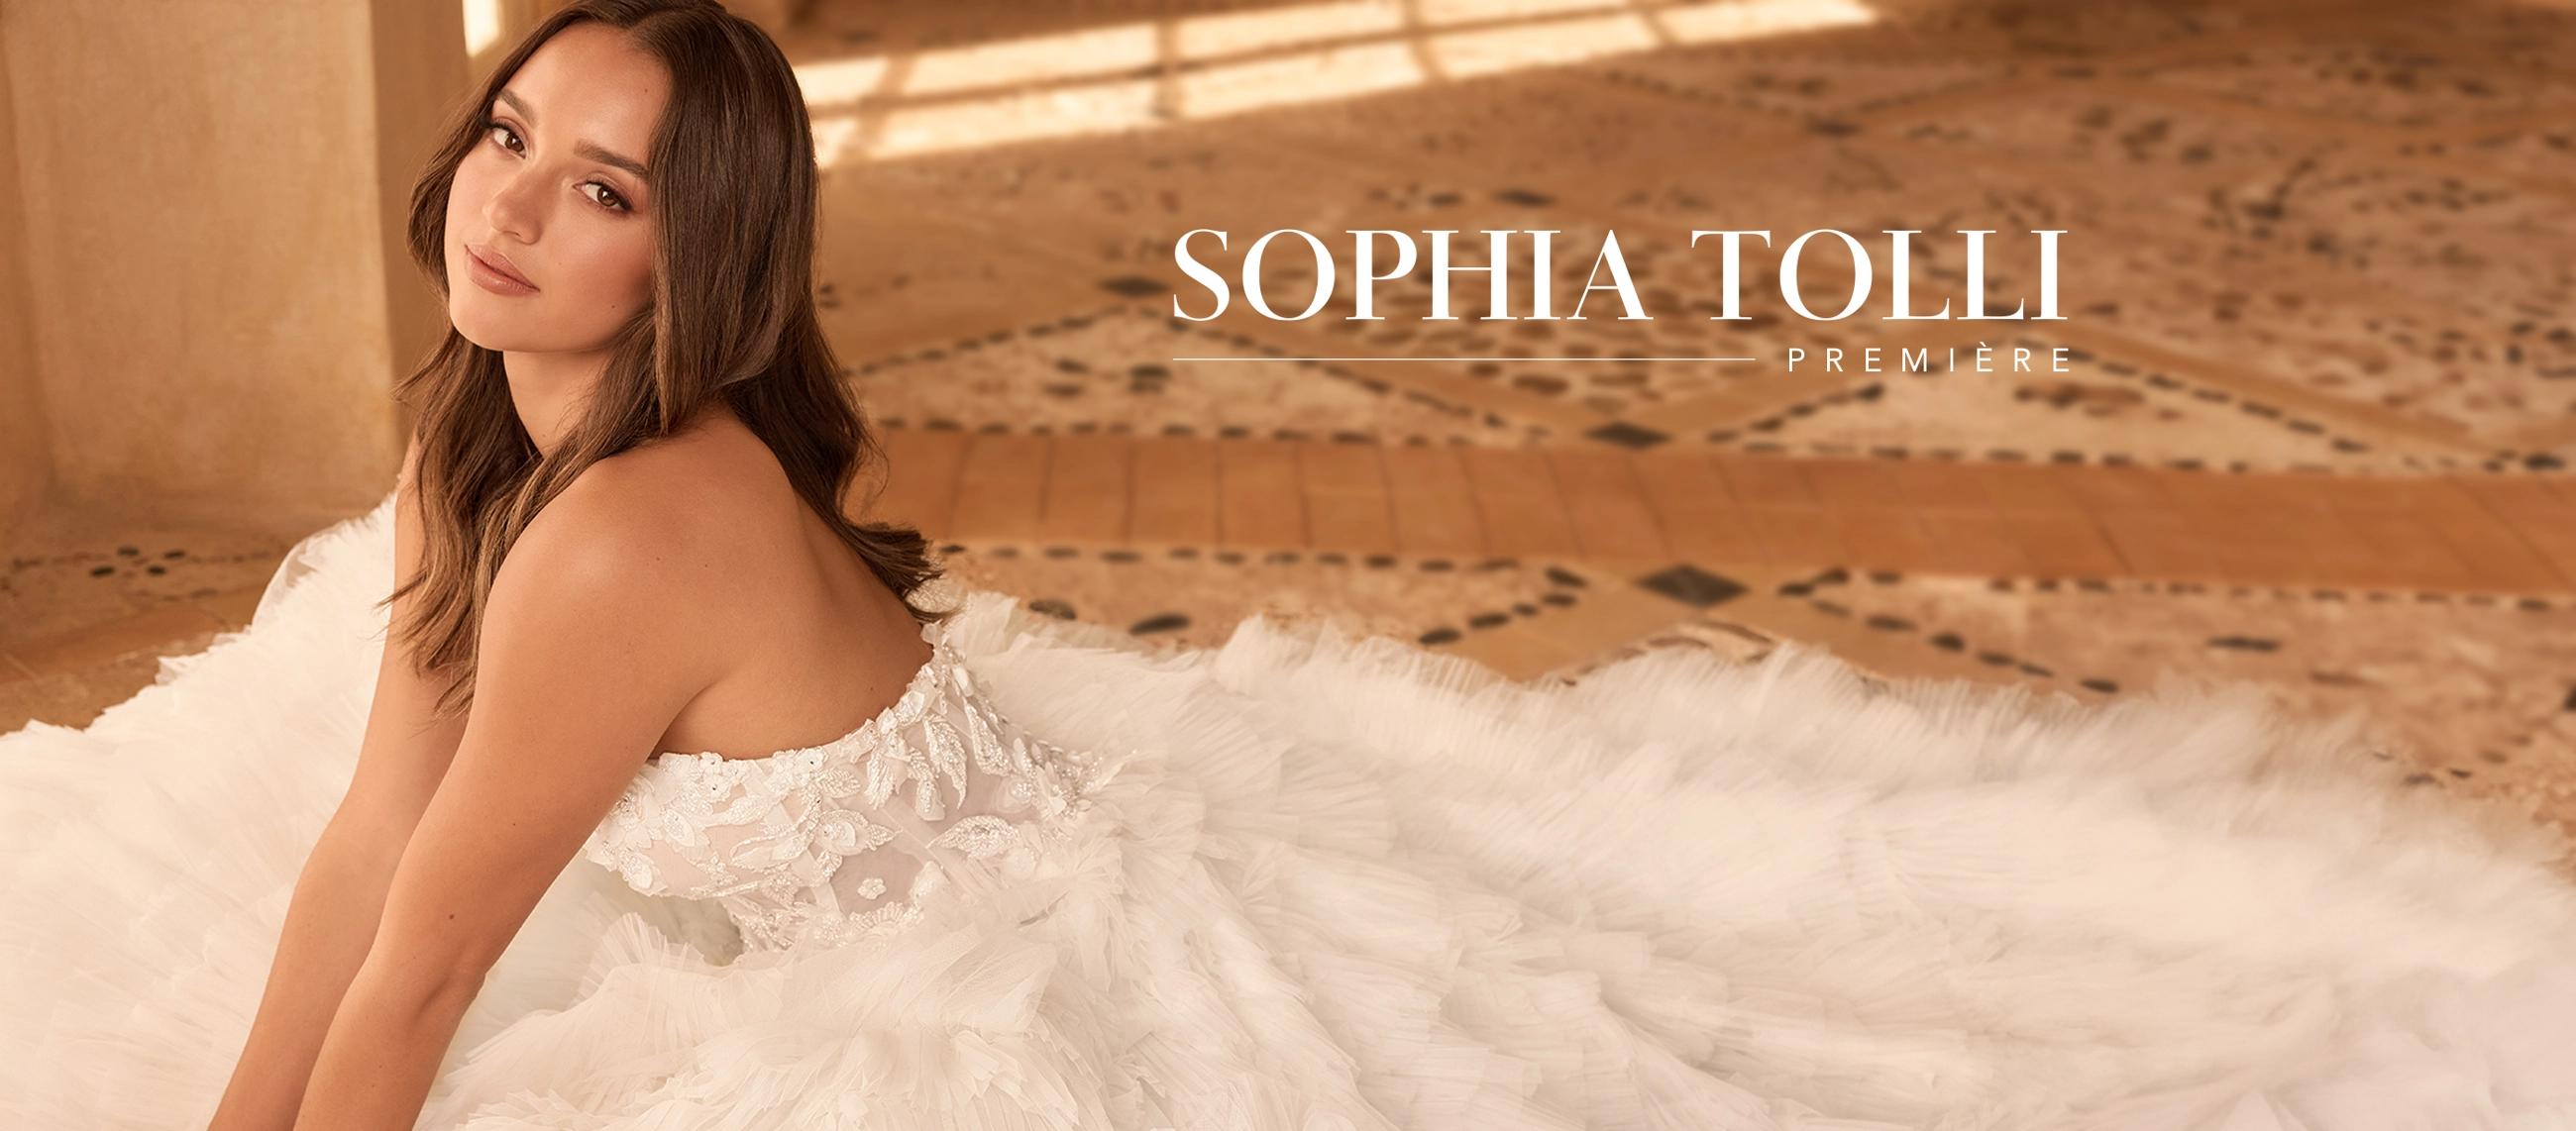 Sophia Tolli Premiere Desktop